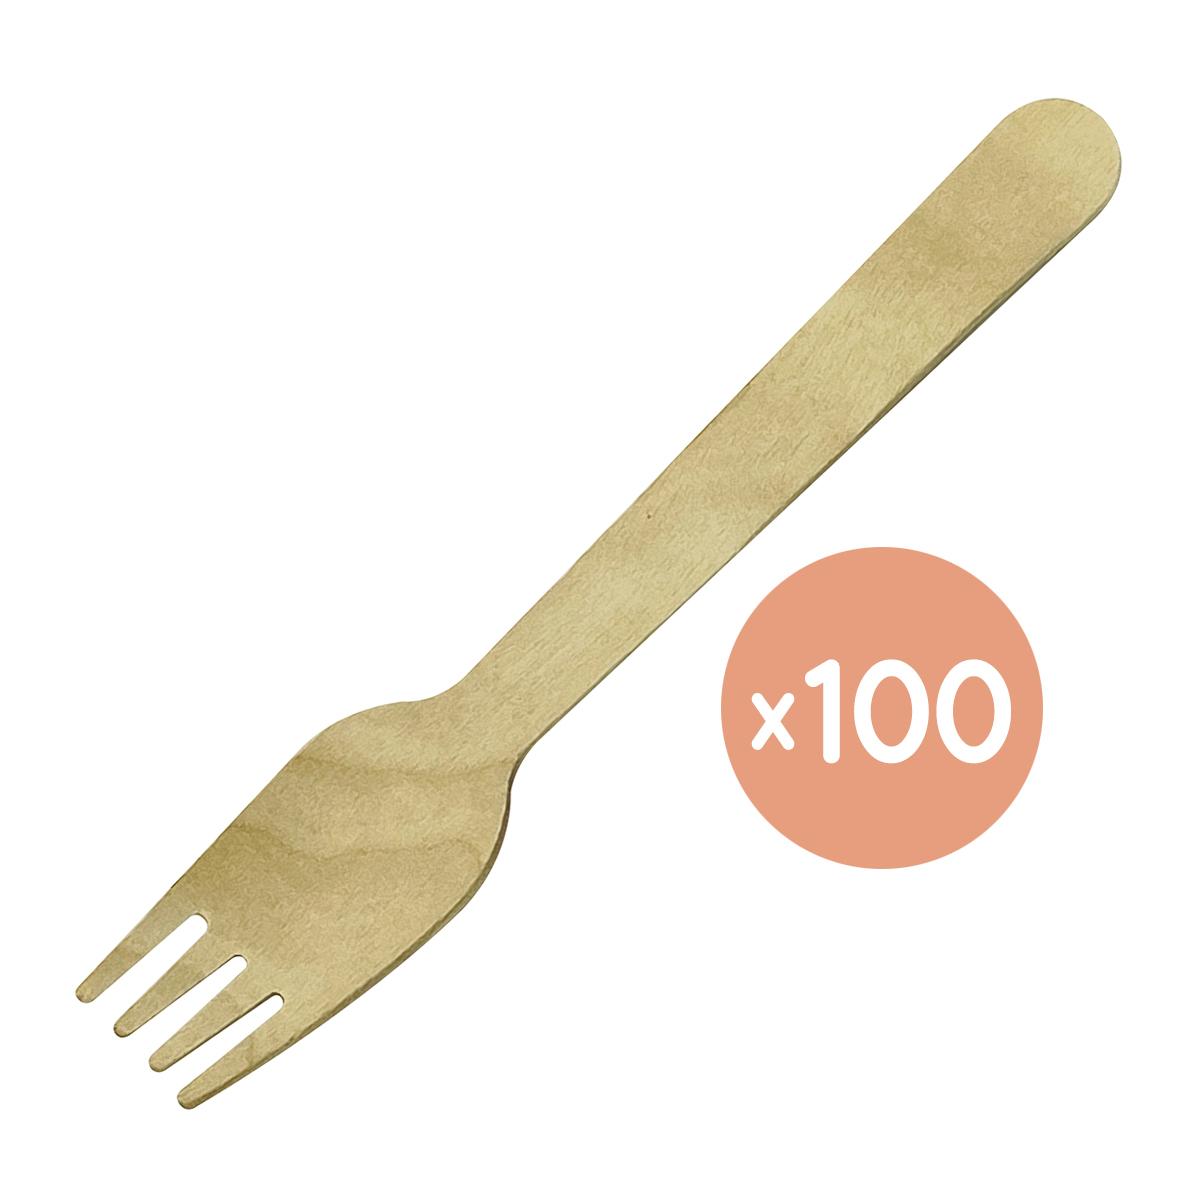 環保木製餐叉, 長16cm, 100隻